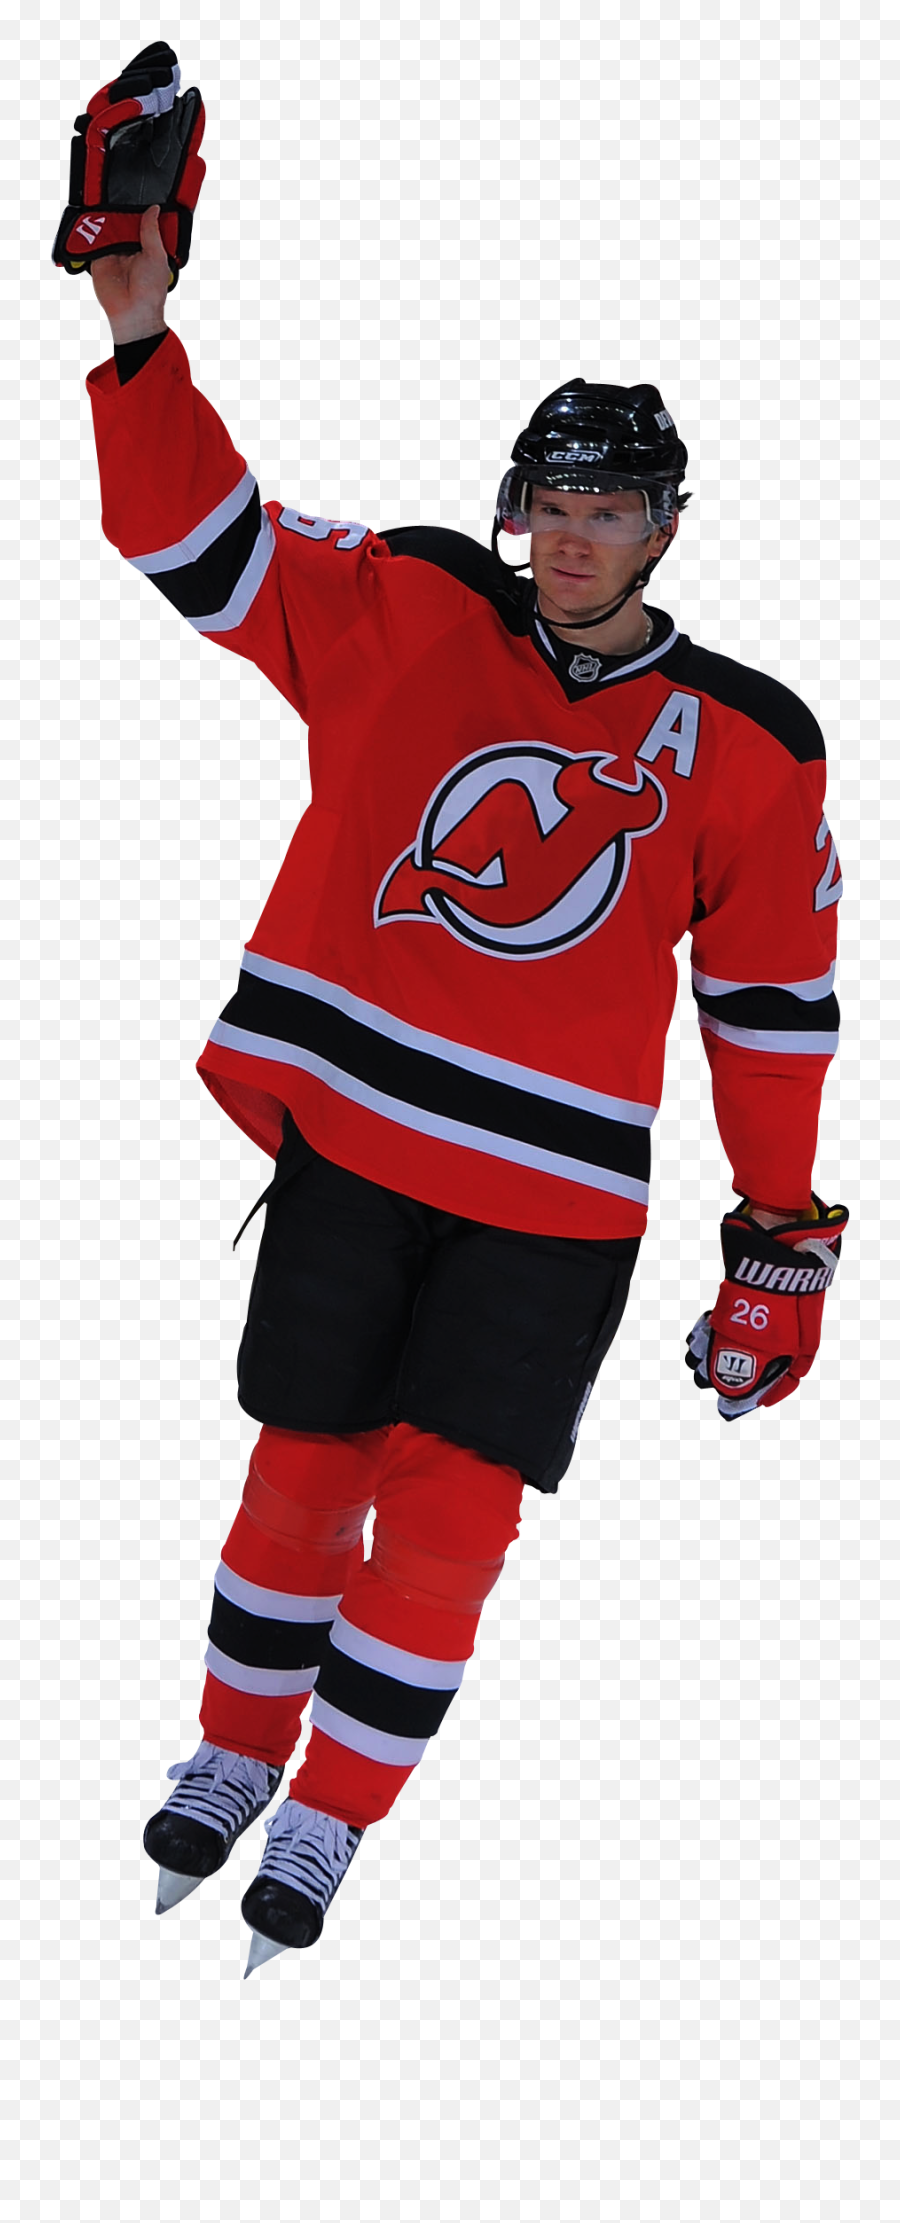 Download New Jersey Devils - New Jersey Devils Player Png New Jersey Devils Player Png Emoji,New Jersey Devils Logo